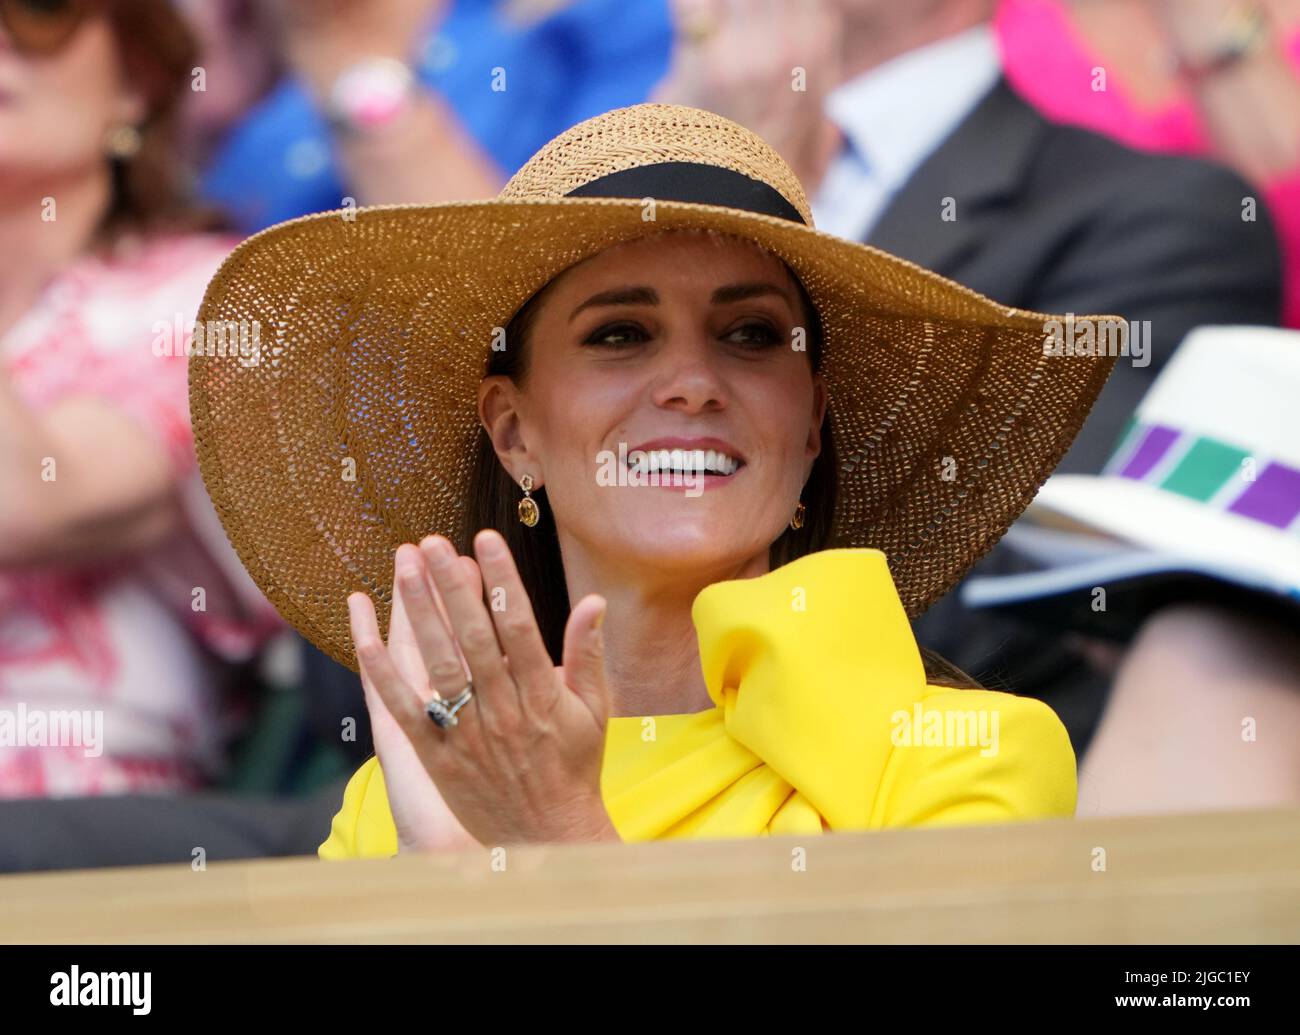 La duchessa di Cambridge nella Royal Box il giorno tredici dei campionati di Wimbledon 2022 all'All England Lawn Tennis and Croquet Club, Wimbledon. Data foto: Sabato 9 luglio 2022. Foto Stock